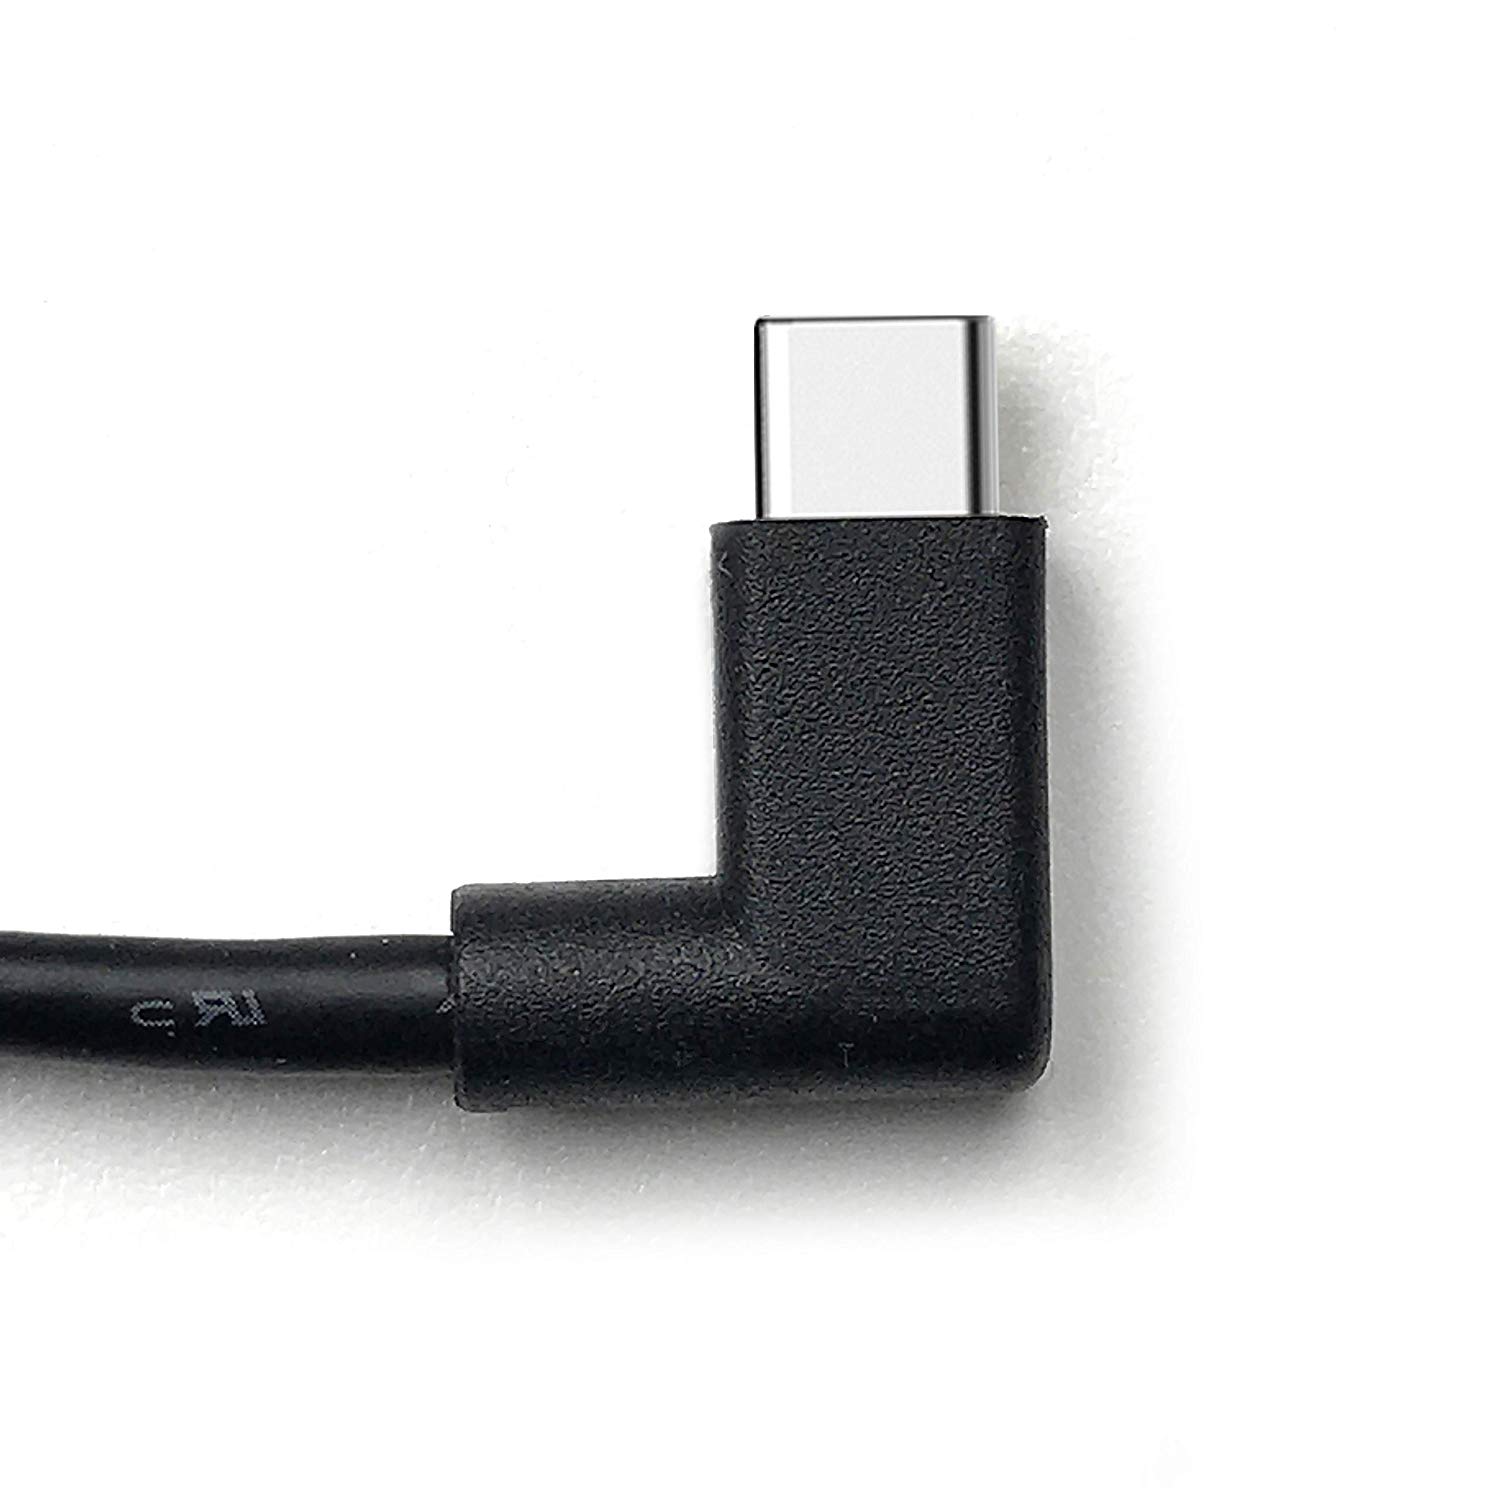 smart things sCharge s24 c, 12 Watt Unterputz-Netzteil für sDock Fix s33, s34 inkl. USB-C Kabel